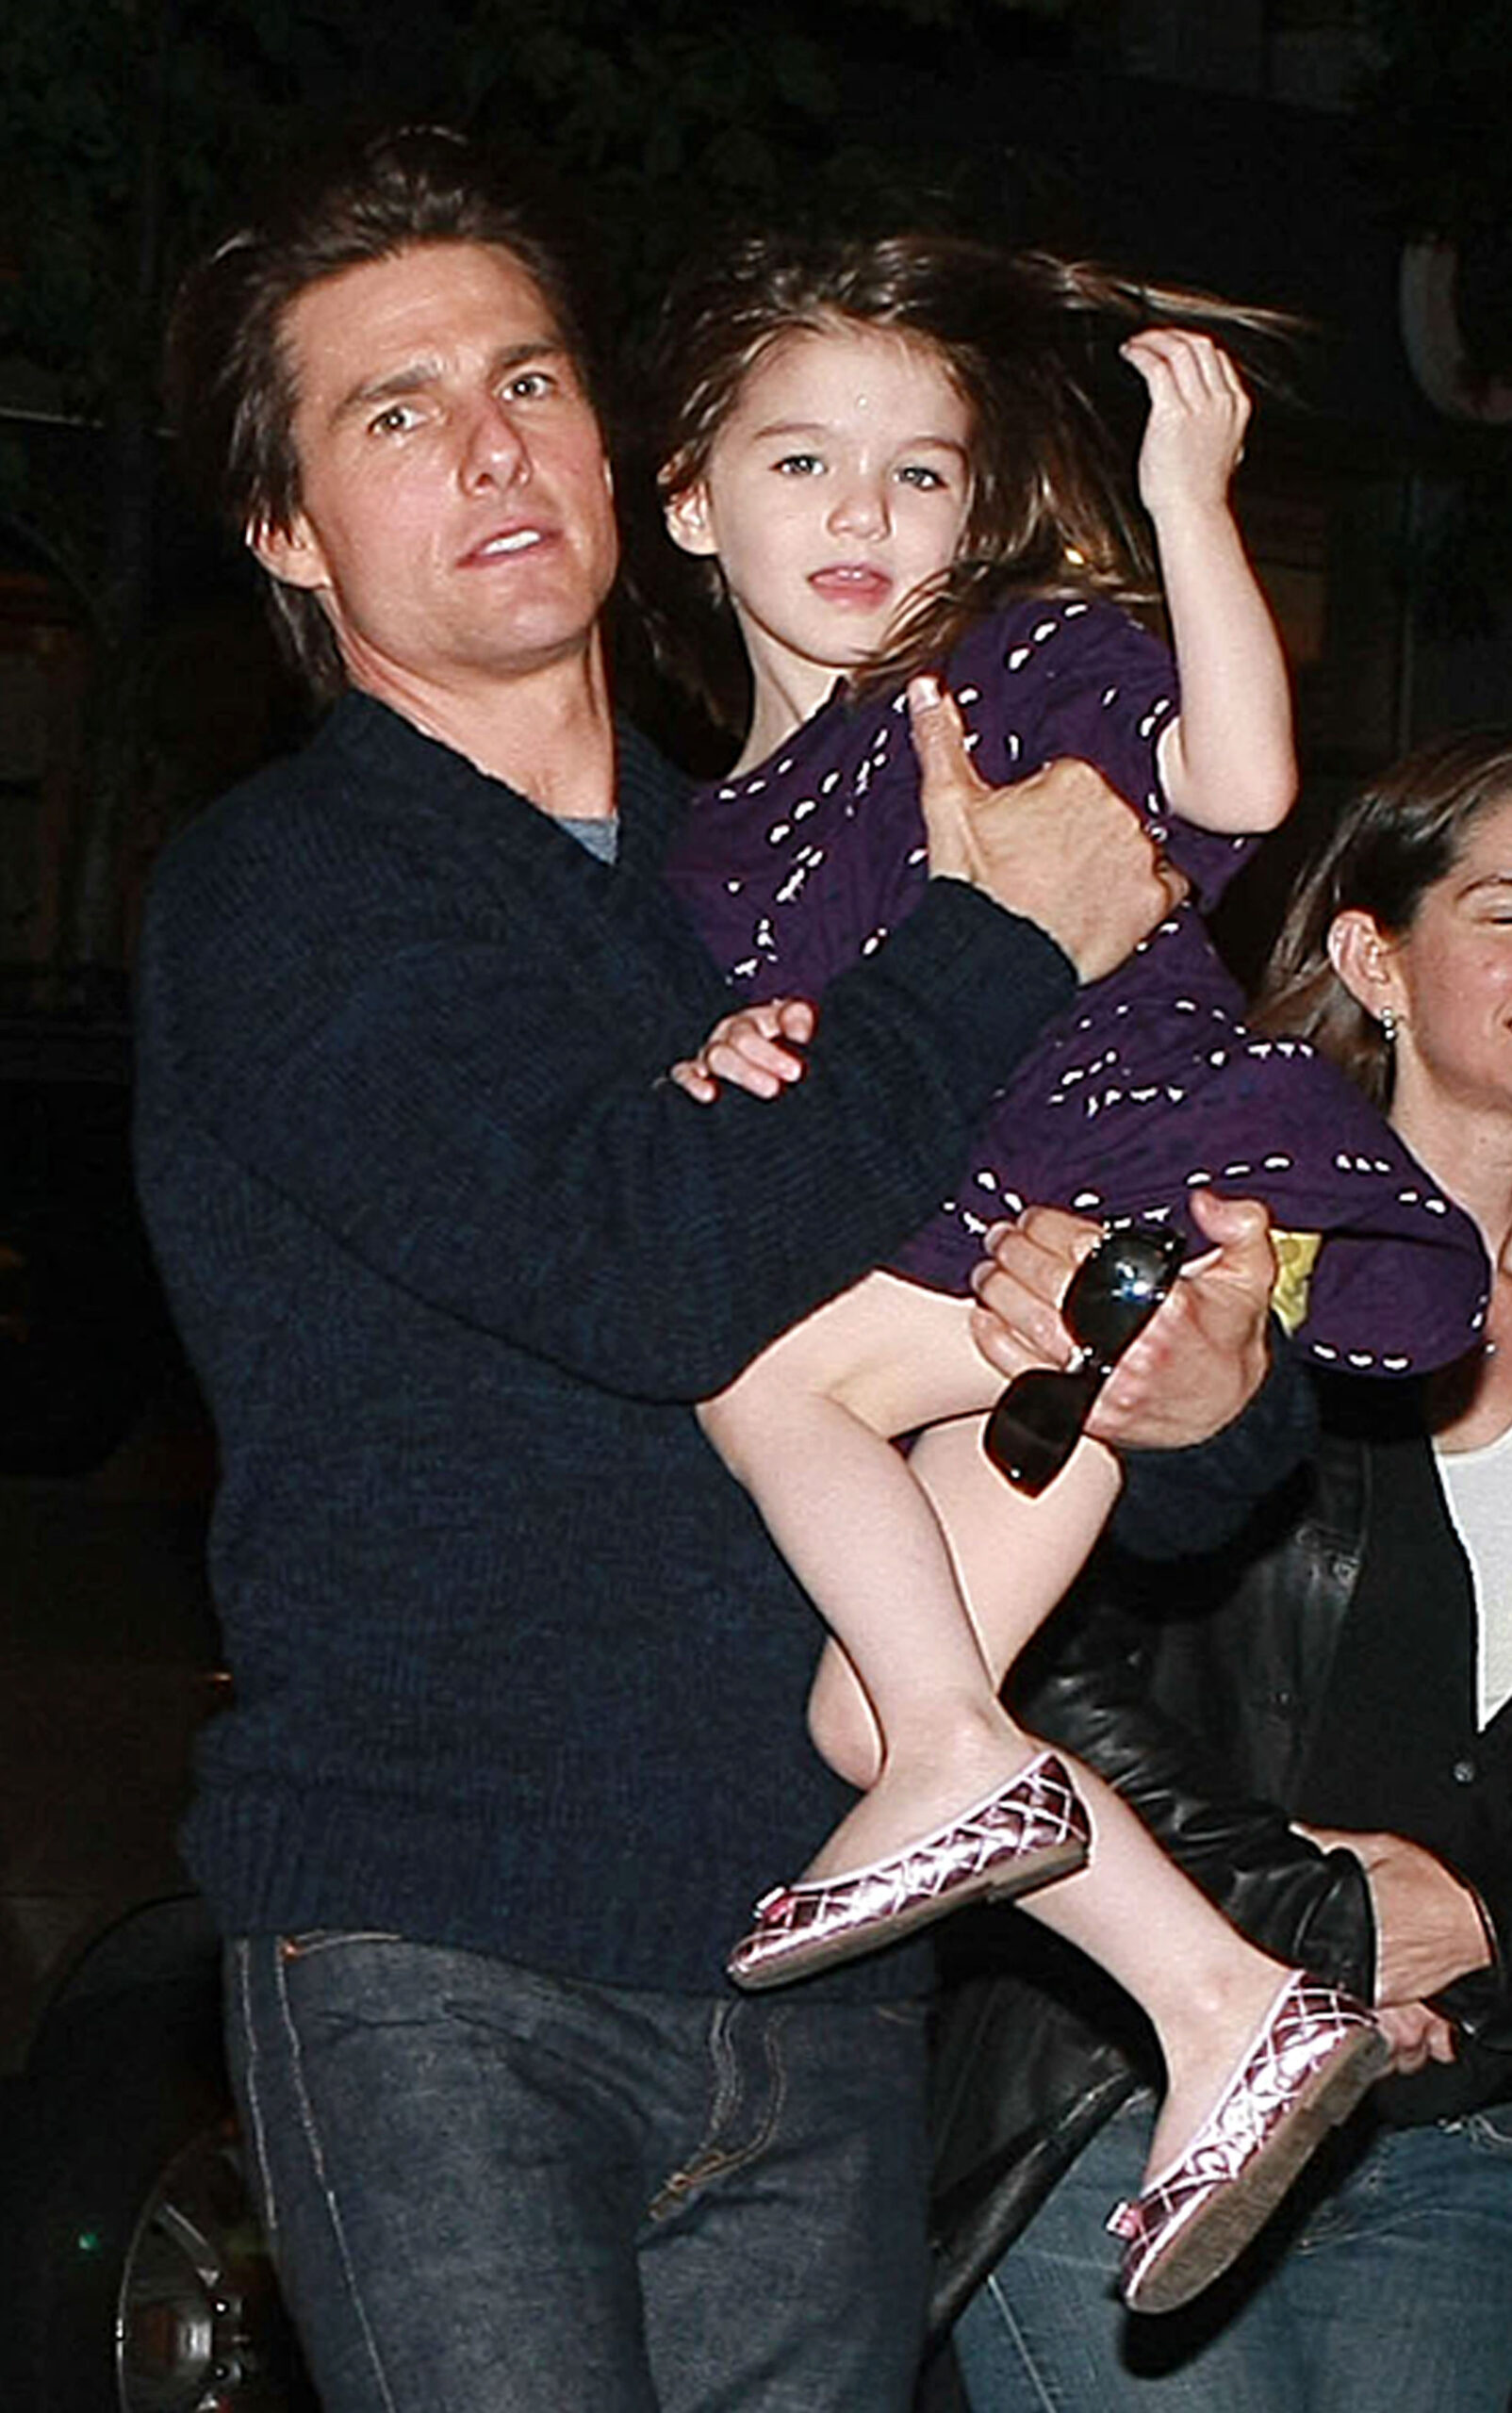 Suri Cruise în brațele tatălui său, Tom Cruise, în 2009, după filmările Wichita. Tom poartă o cămașă neagră, Suri e îmbrăcată într-o rochie mov